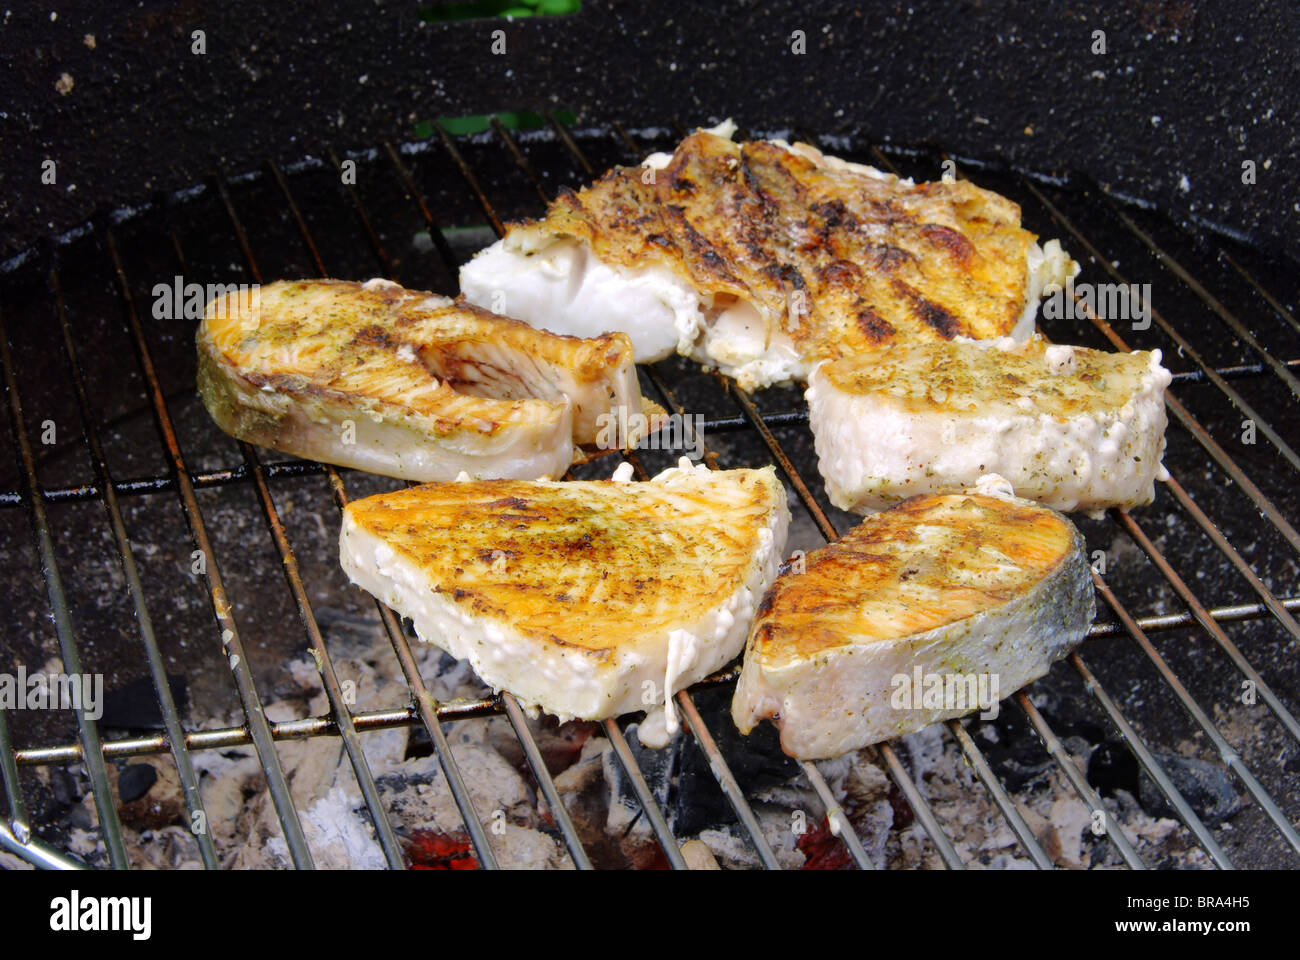 Grillen Fischsteak - Grillen Steak vom Fisch 19 Stockfoto